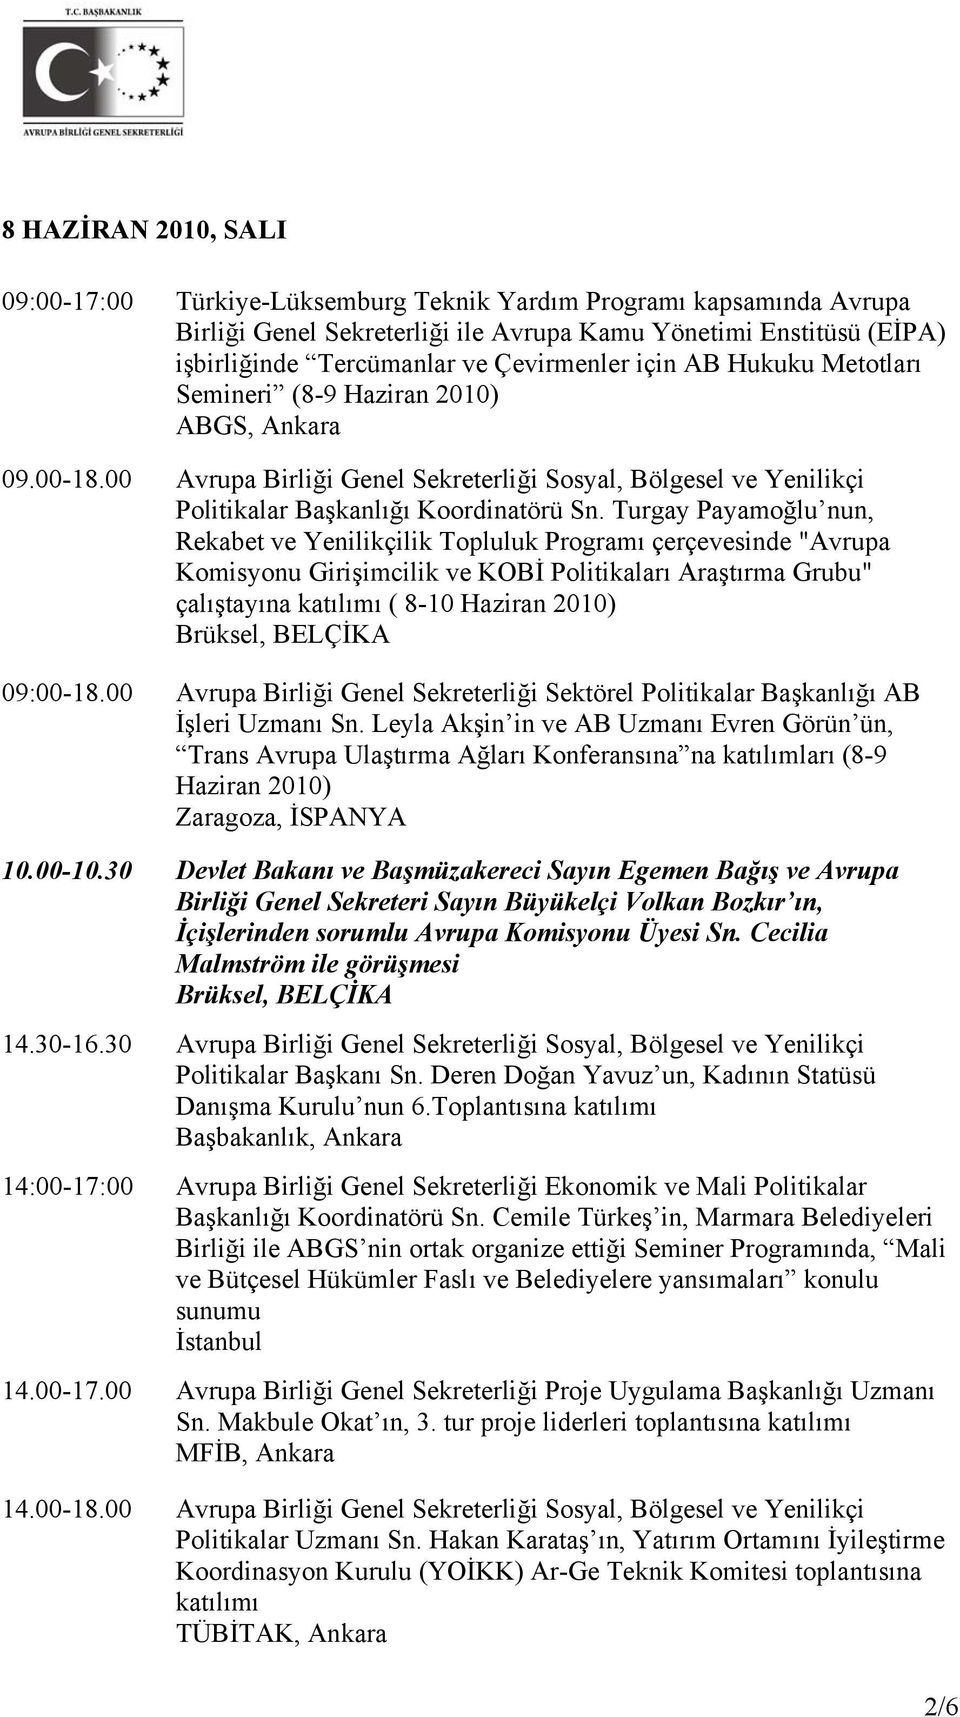 Turgay Payamoğlu nun, Rekabet ve Yenilikçilik Topluluk Programı çerçevesinde "Avrupa Komisyonu Girişimcilik ve KOBİ Politikaları Araştırma Grubu" çalıştayına katılımı ( 8-10 Haziran 2010) 09:00-18.